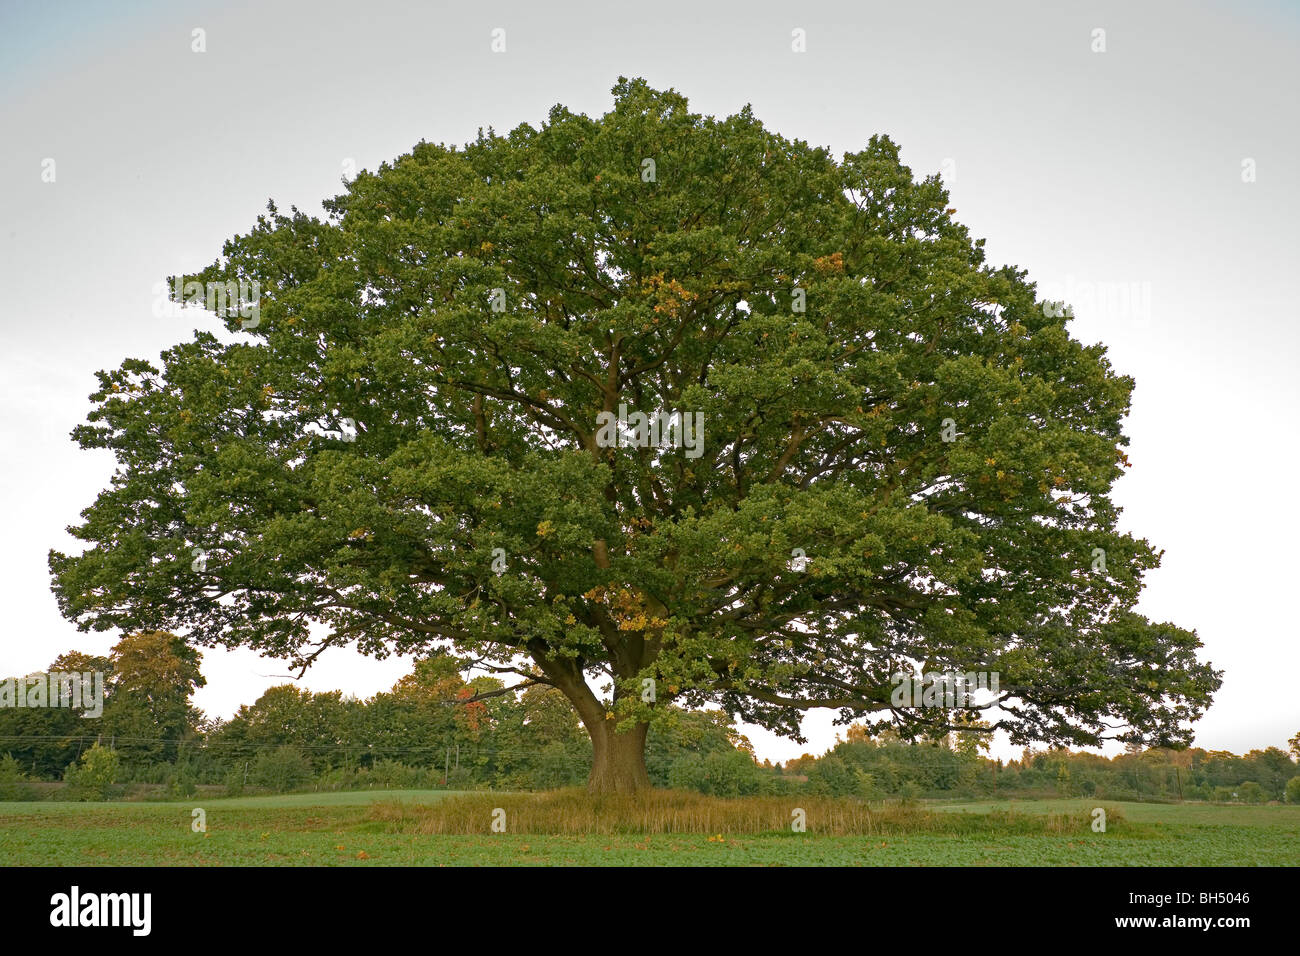 Grand, vieux chêne, chêne commun, chêne anglais, Quercus robur, toujours avec des feuilles vertes à l'automne dans un champ de cultures d'hiver. Banque D'Images